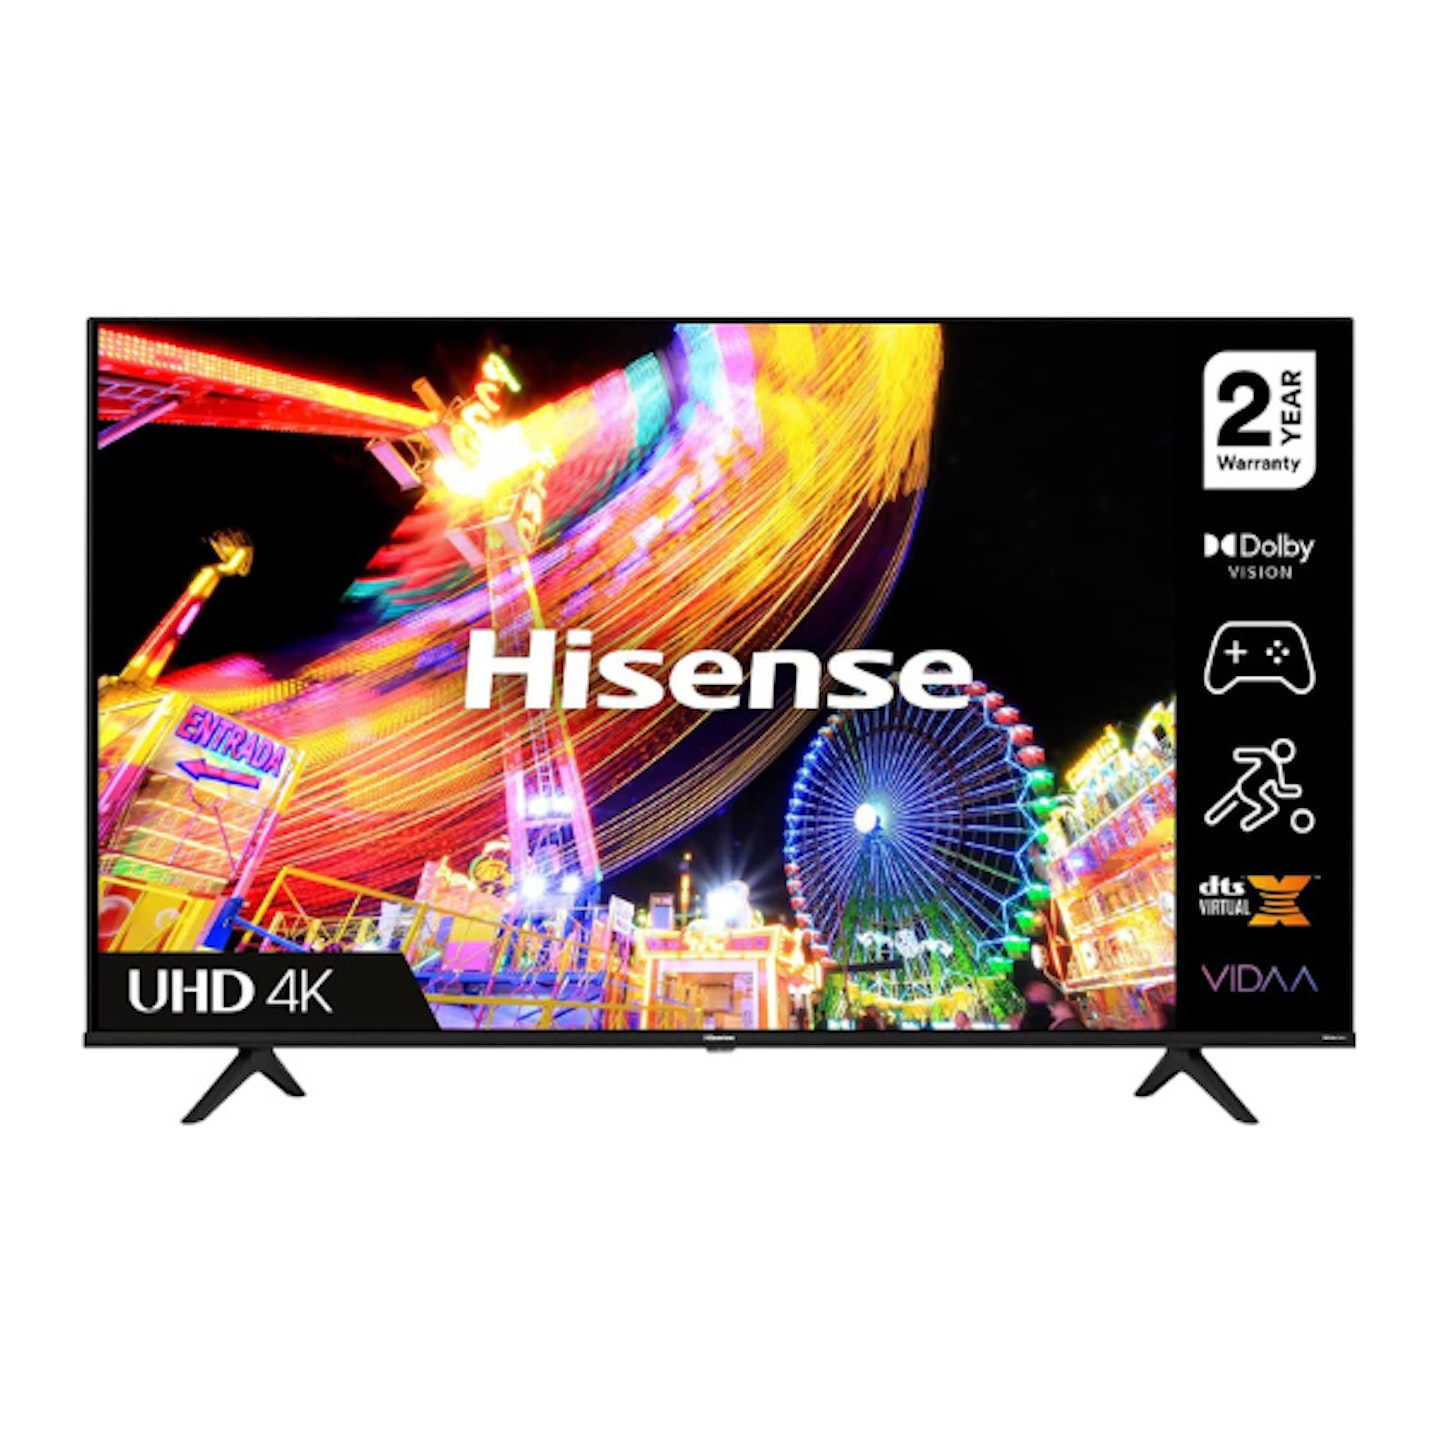 Hisense 4K TV